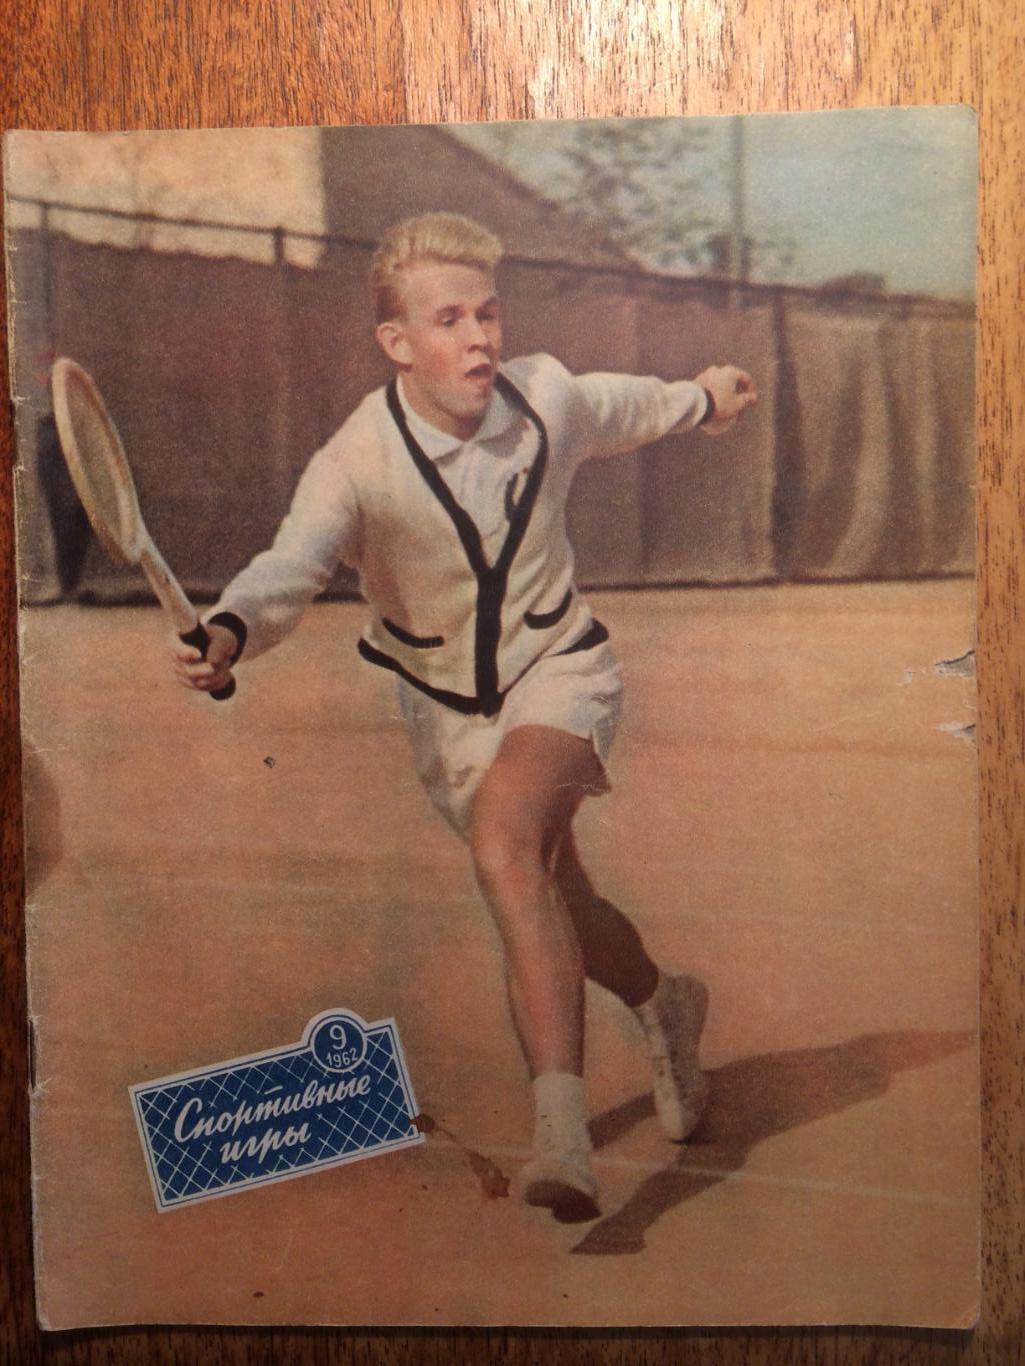 Журнал Спортивные игры №9 1962